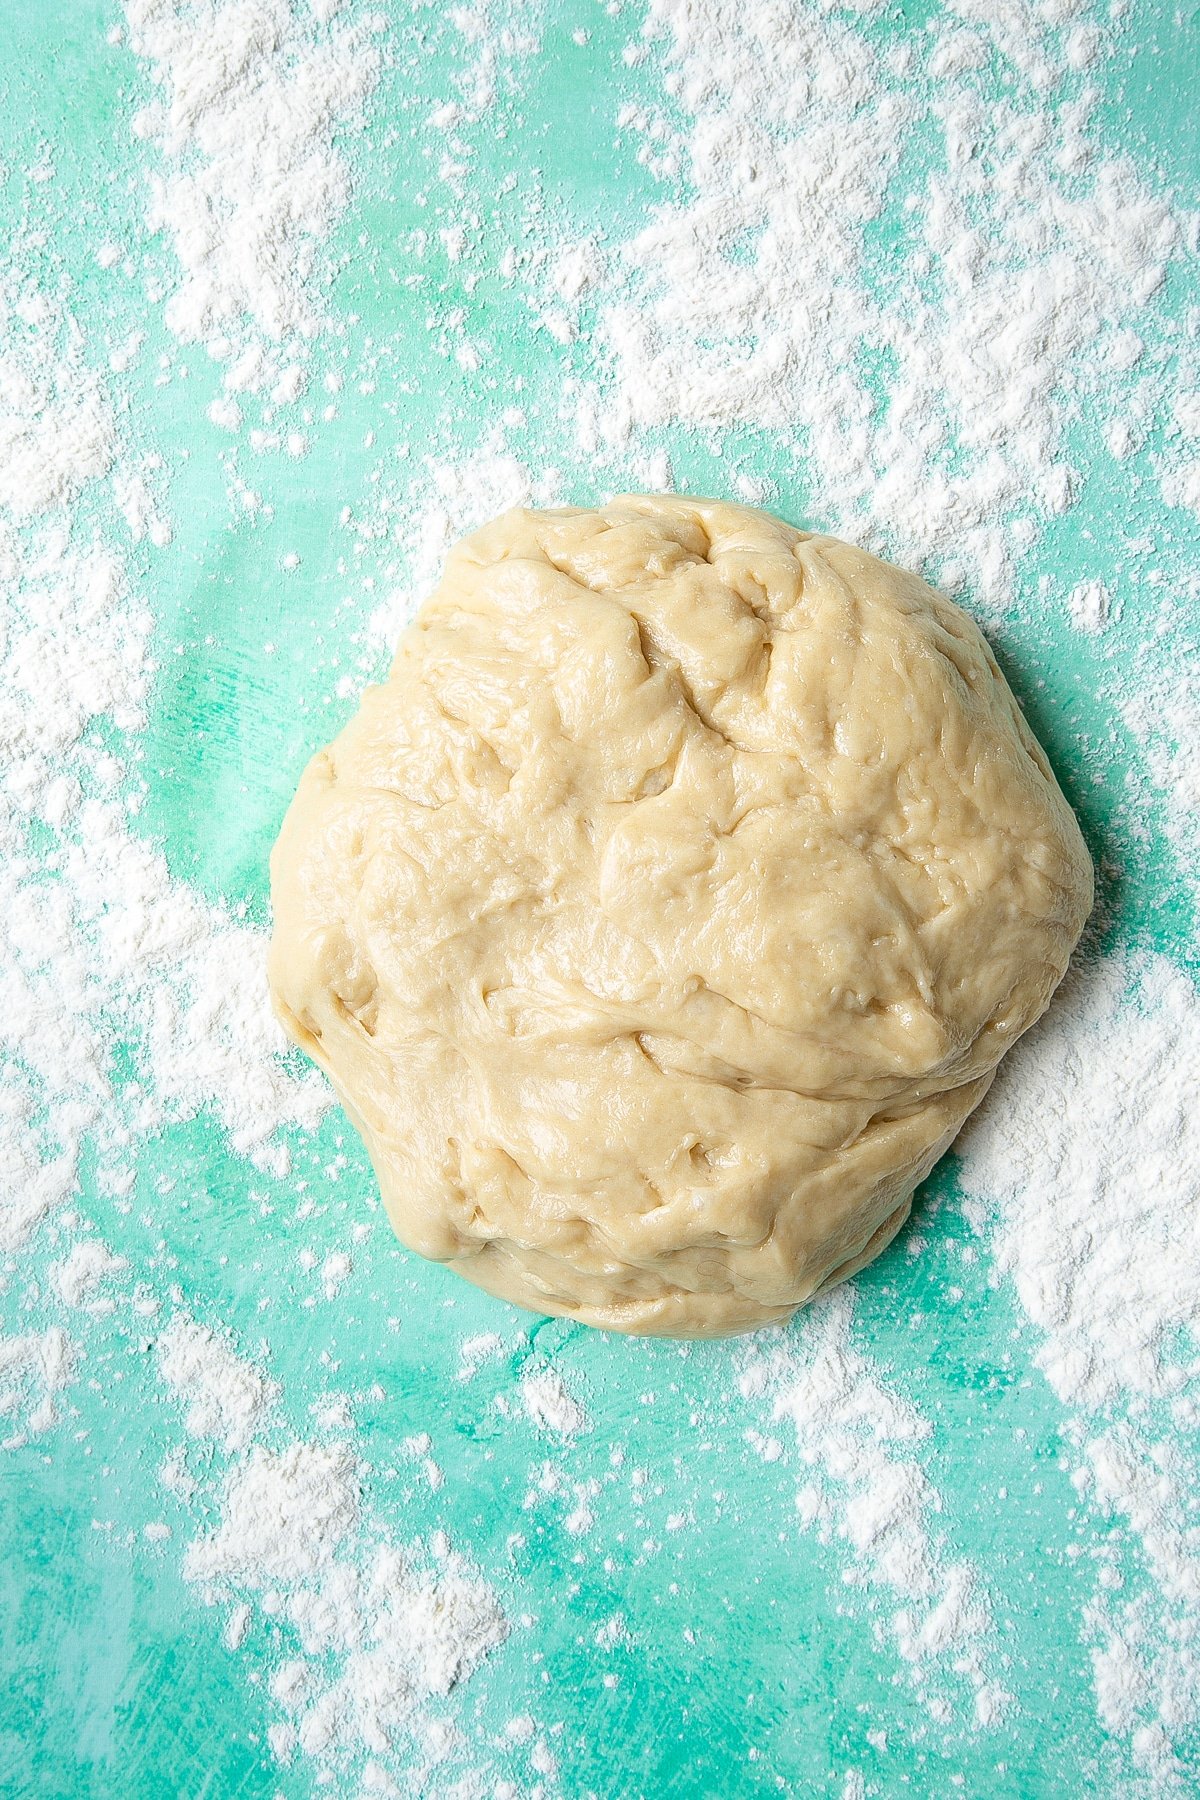 Bread dough on a floured surface.